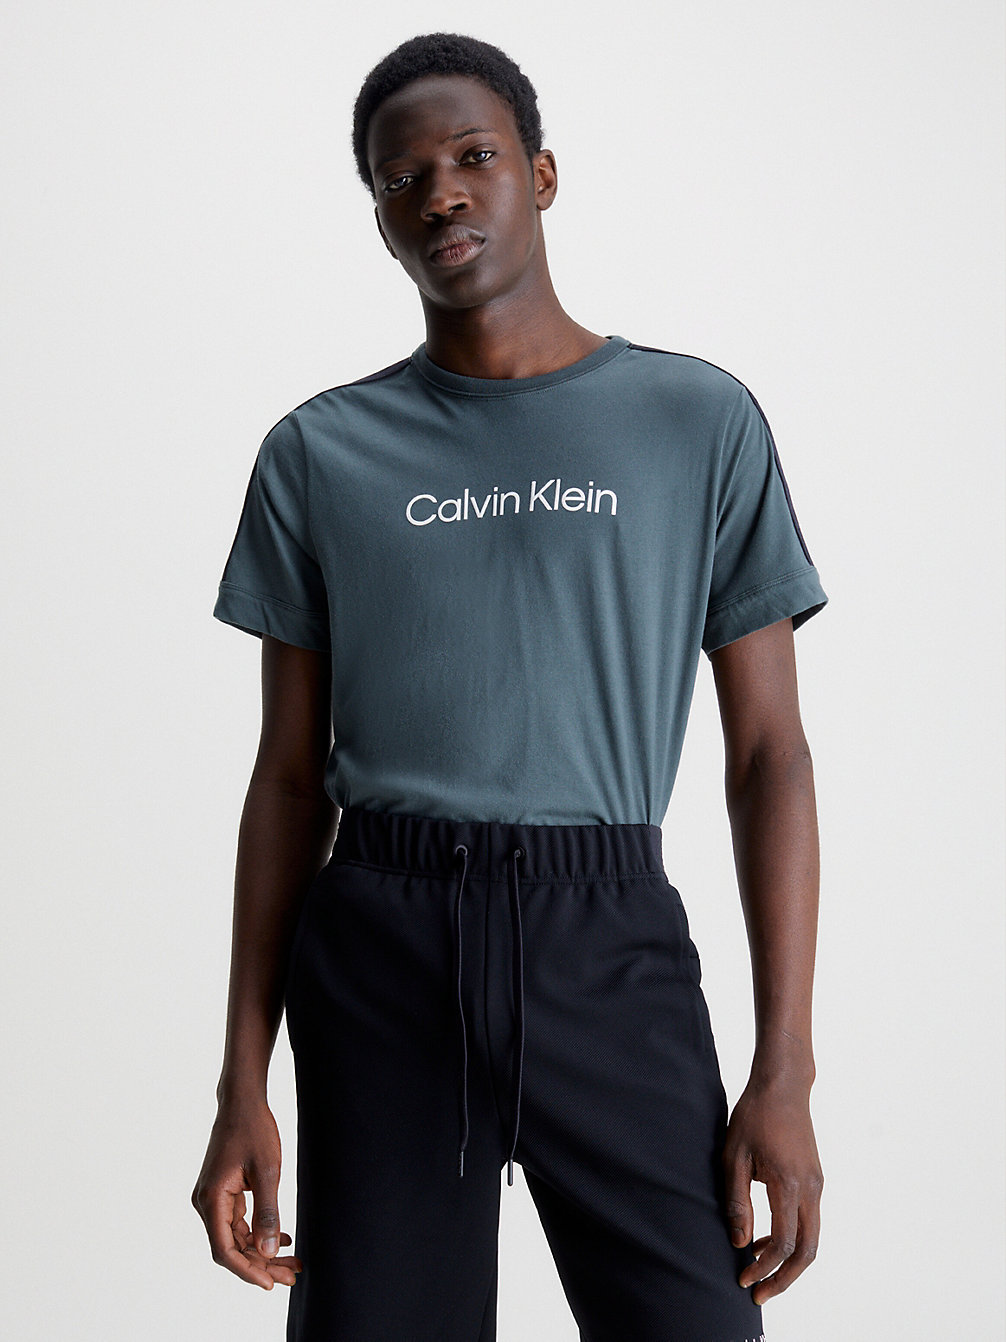 T-Shirt De Sport Doux > URBAN CHIC > undefined hommes > Calvin Klein